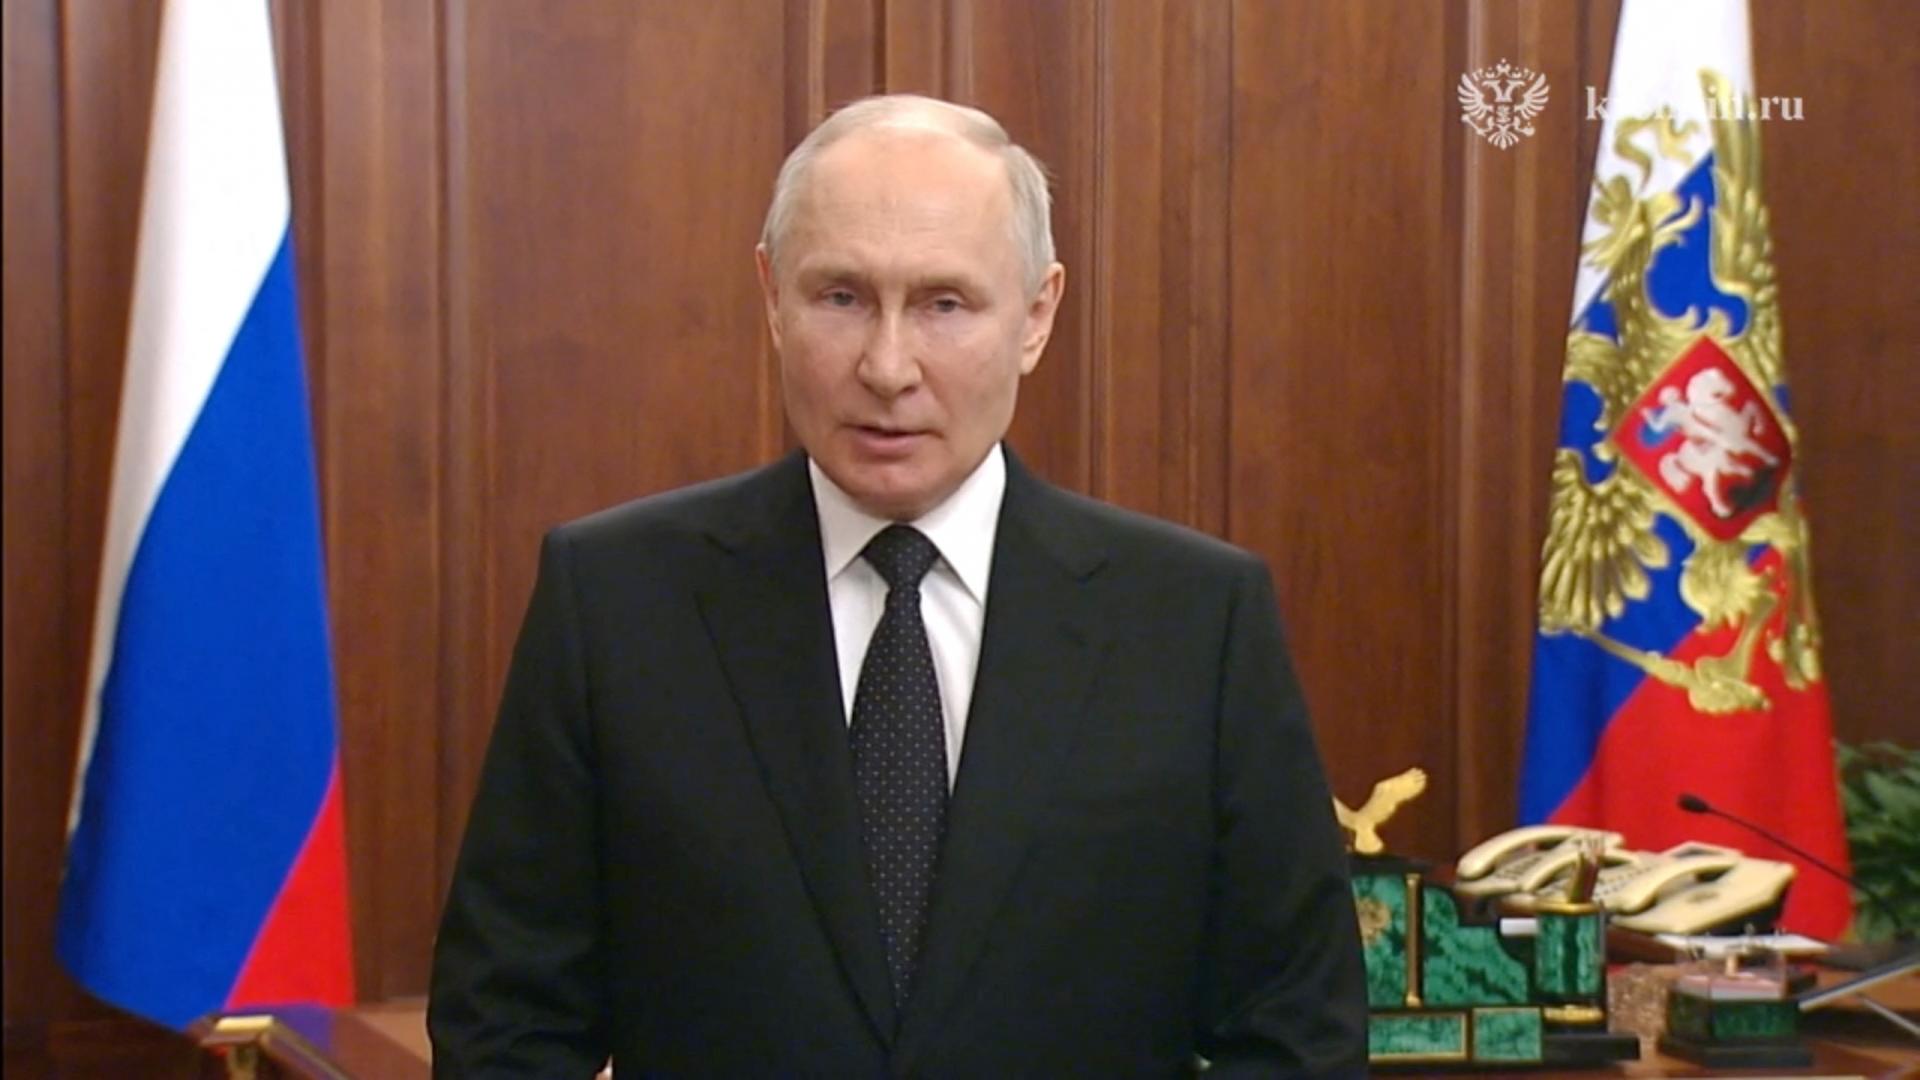 Mimoriadny prejav Putina: Vzbura wagnerovcov je zradou Ruska. Za bodnutie do chrbta príde tvrdá odveta